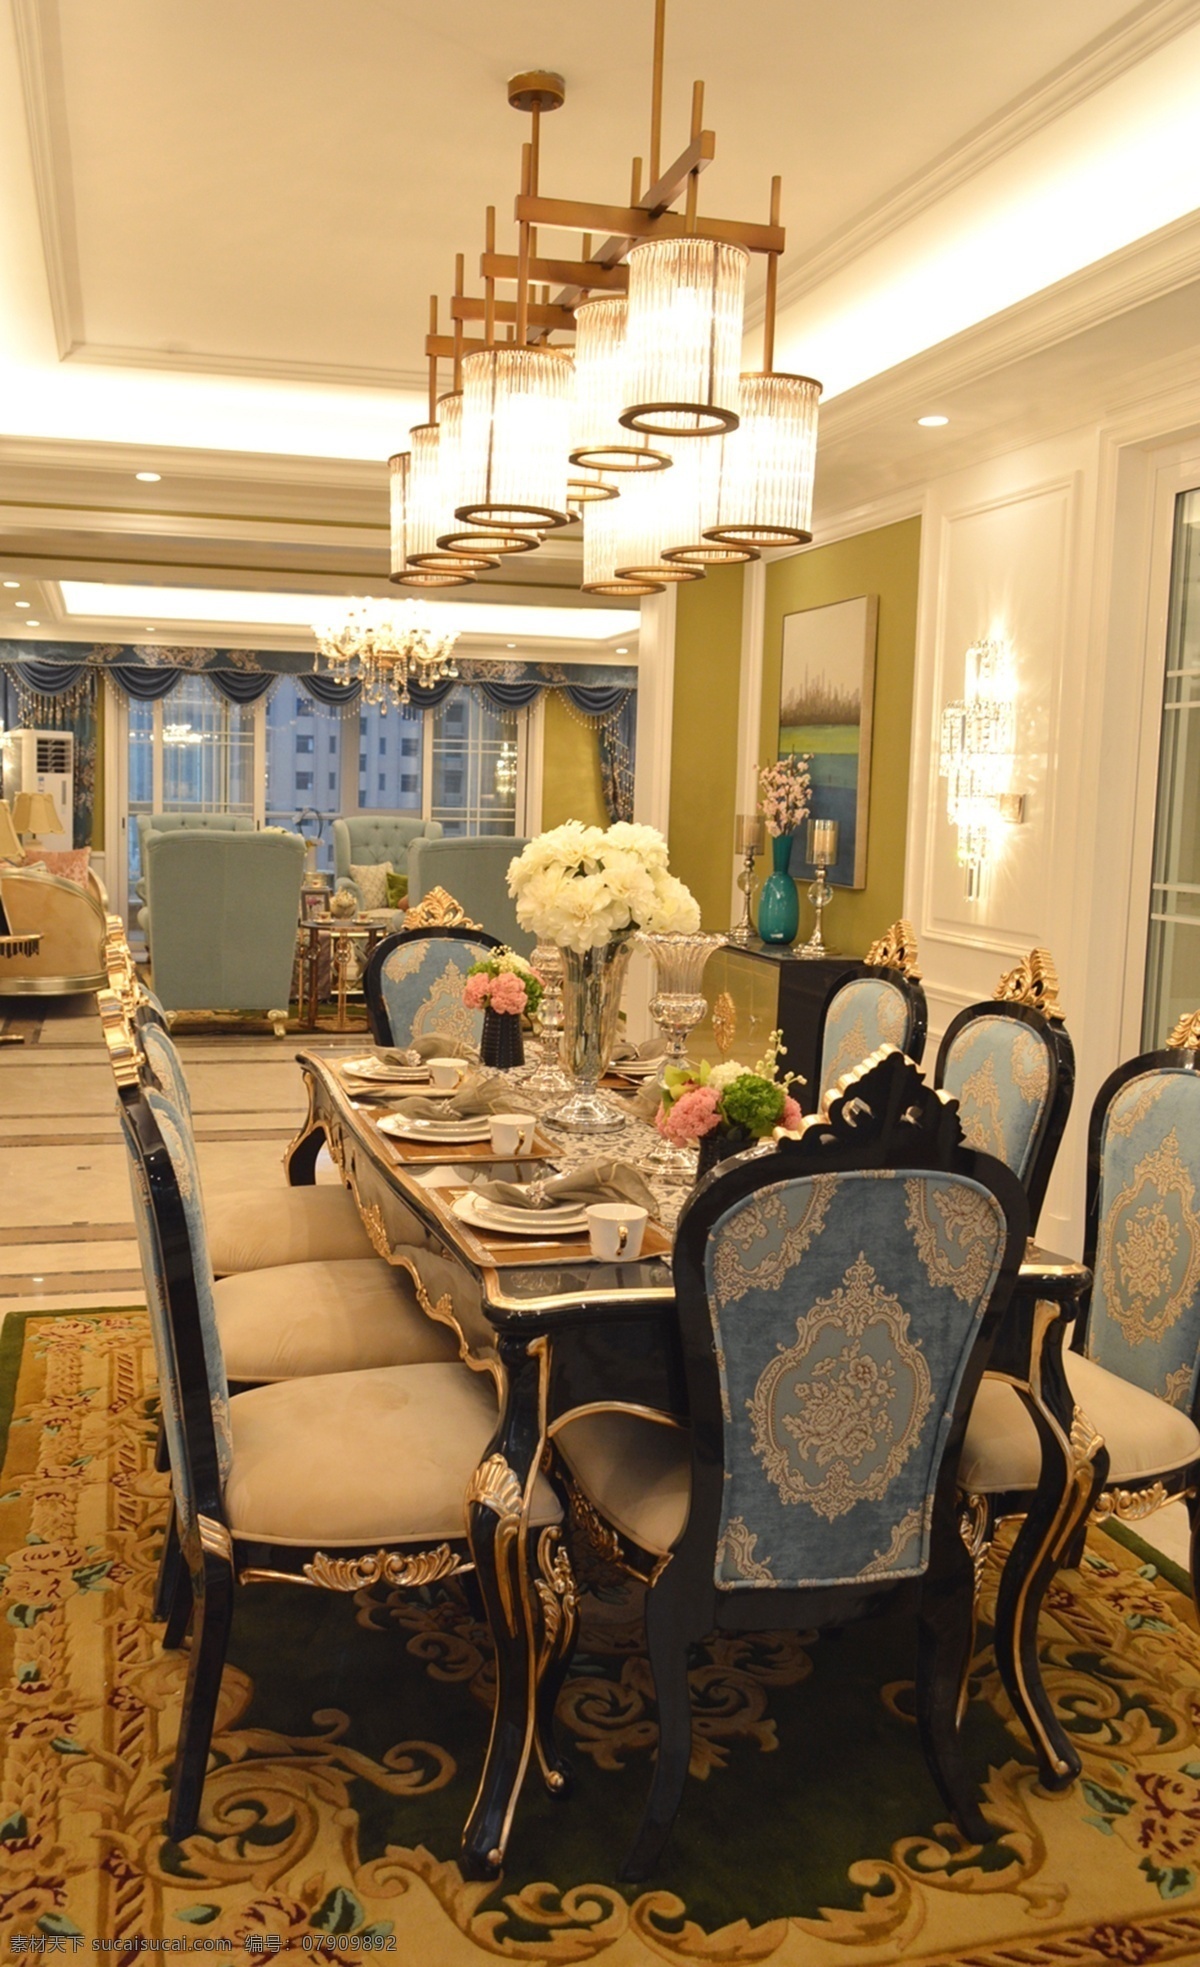 英国 皇室 风 餐厅 家装 效果图 皇室风 淡黄 粉红色 鲜花 英式桌椅 古典挂灯 室内设计 家装效果图